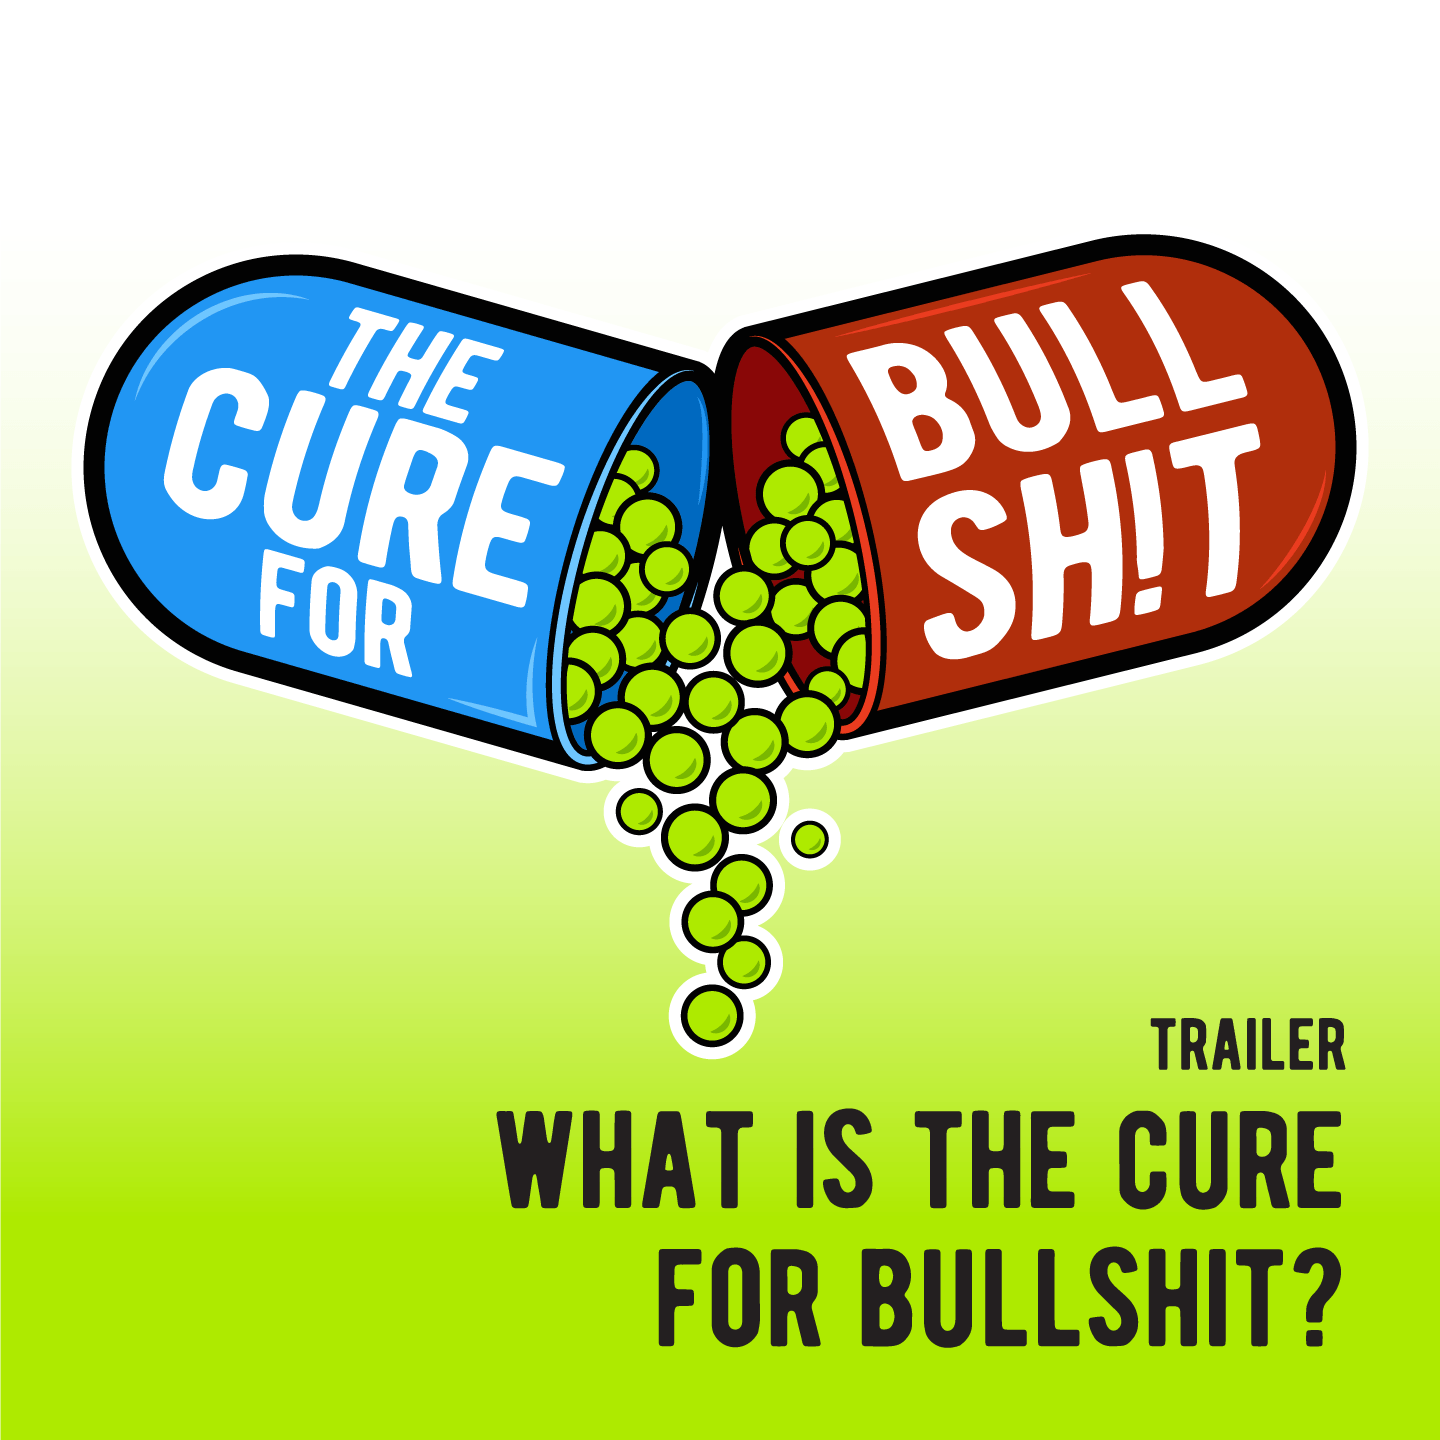 The Cure for Bullshit cover art for the podcast trailer 